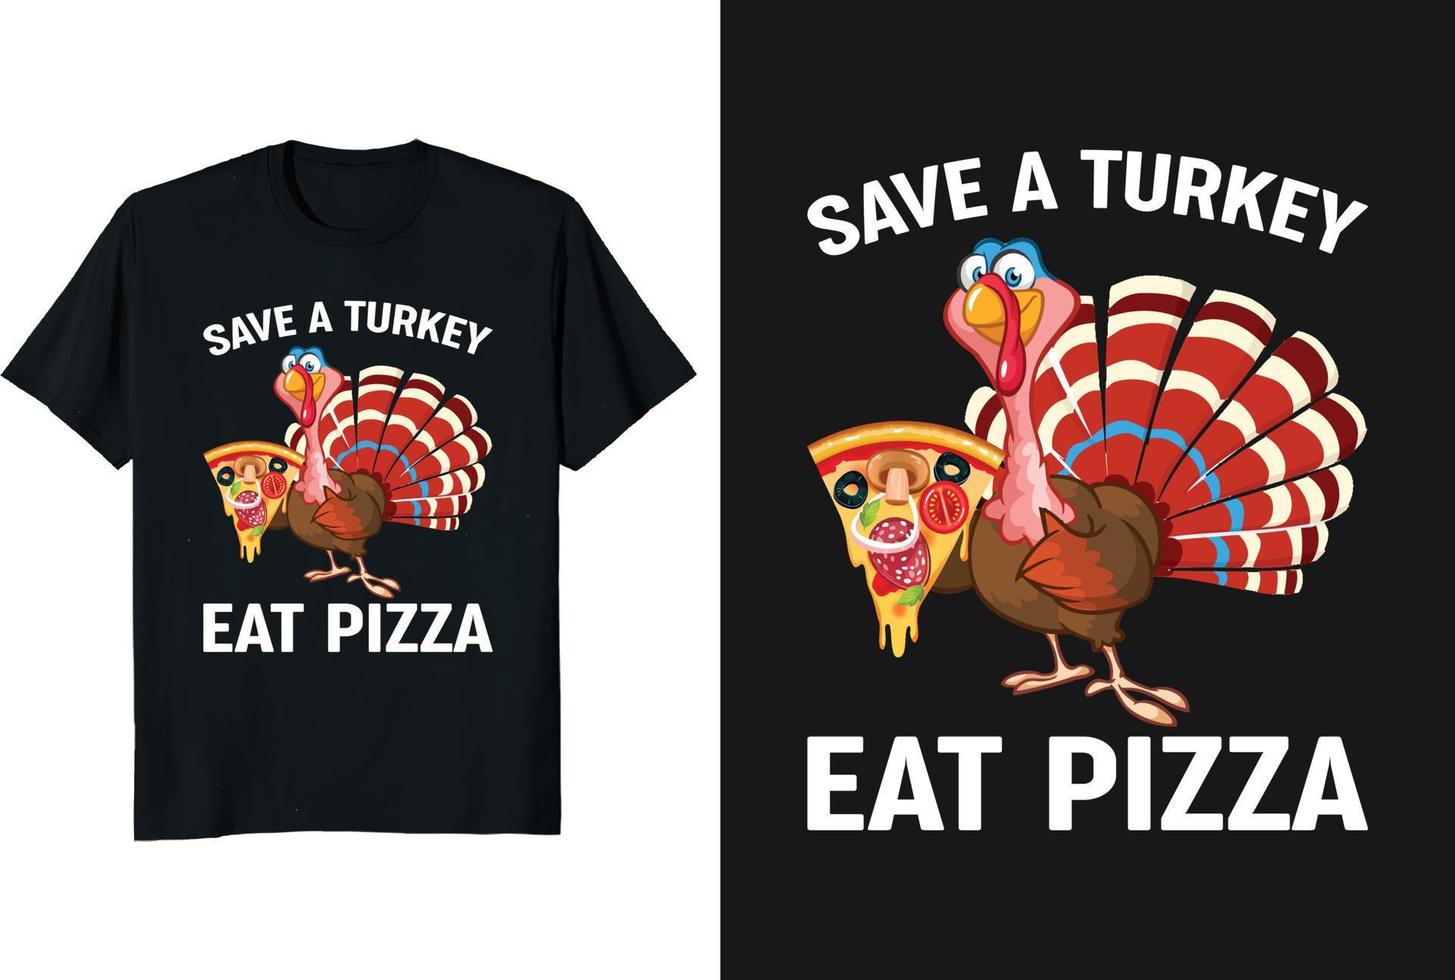 Speichern Sie einen Truthahn, essen Sie Pizza Thanksgiving-T-Shirt-Design mit Truthahn, der Pizza hält vektor